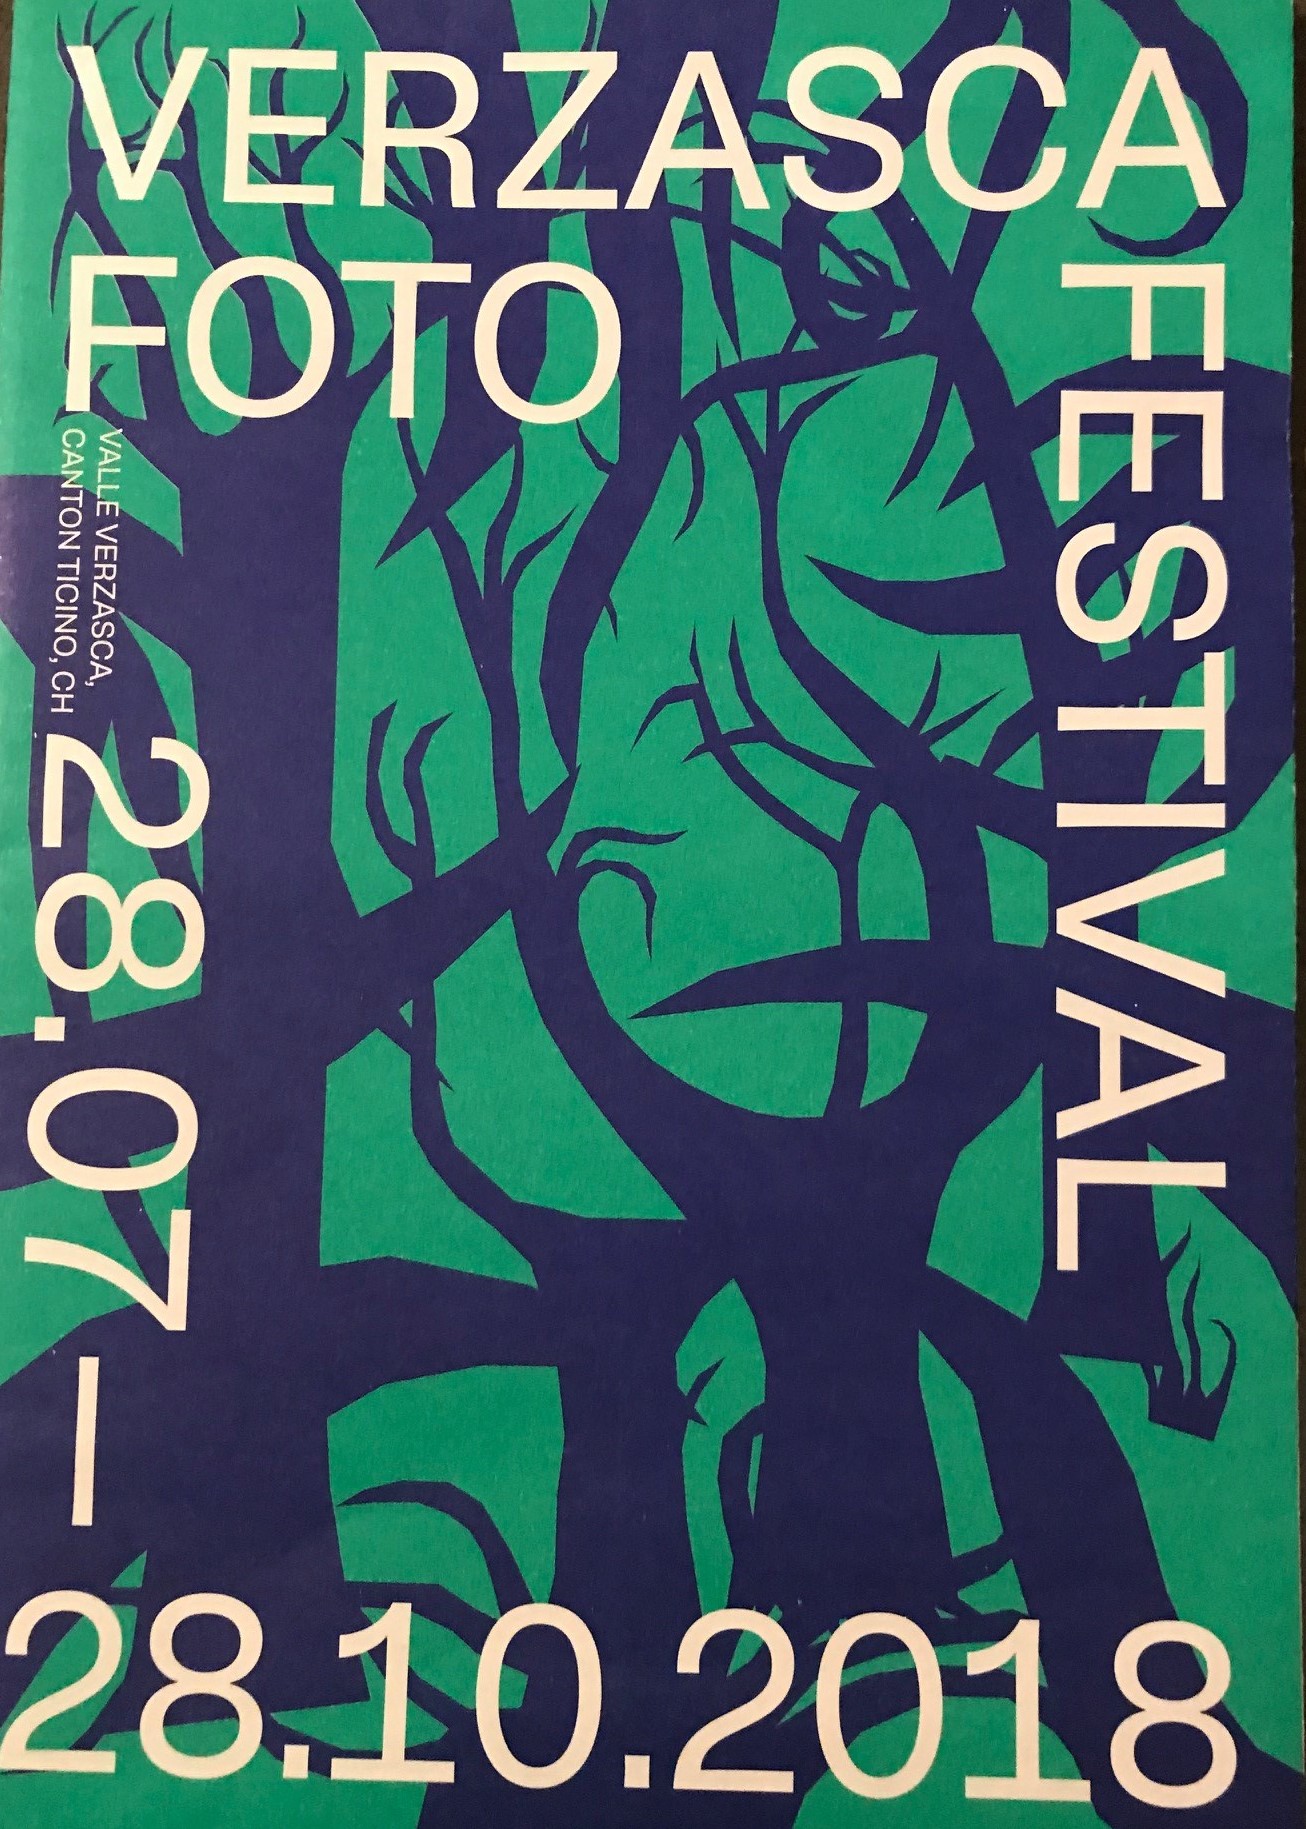 Verzasca foto festival 2